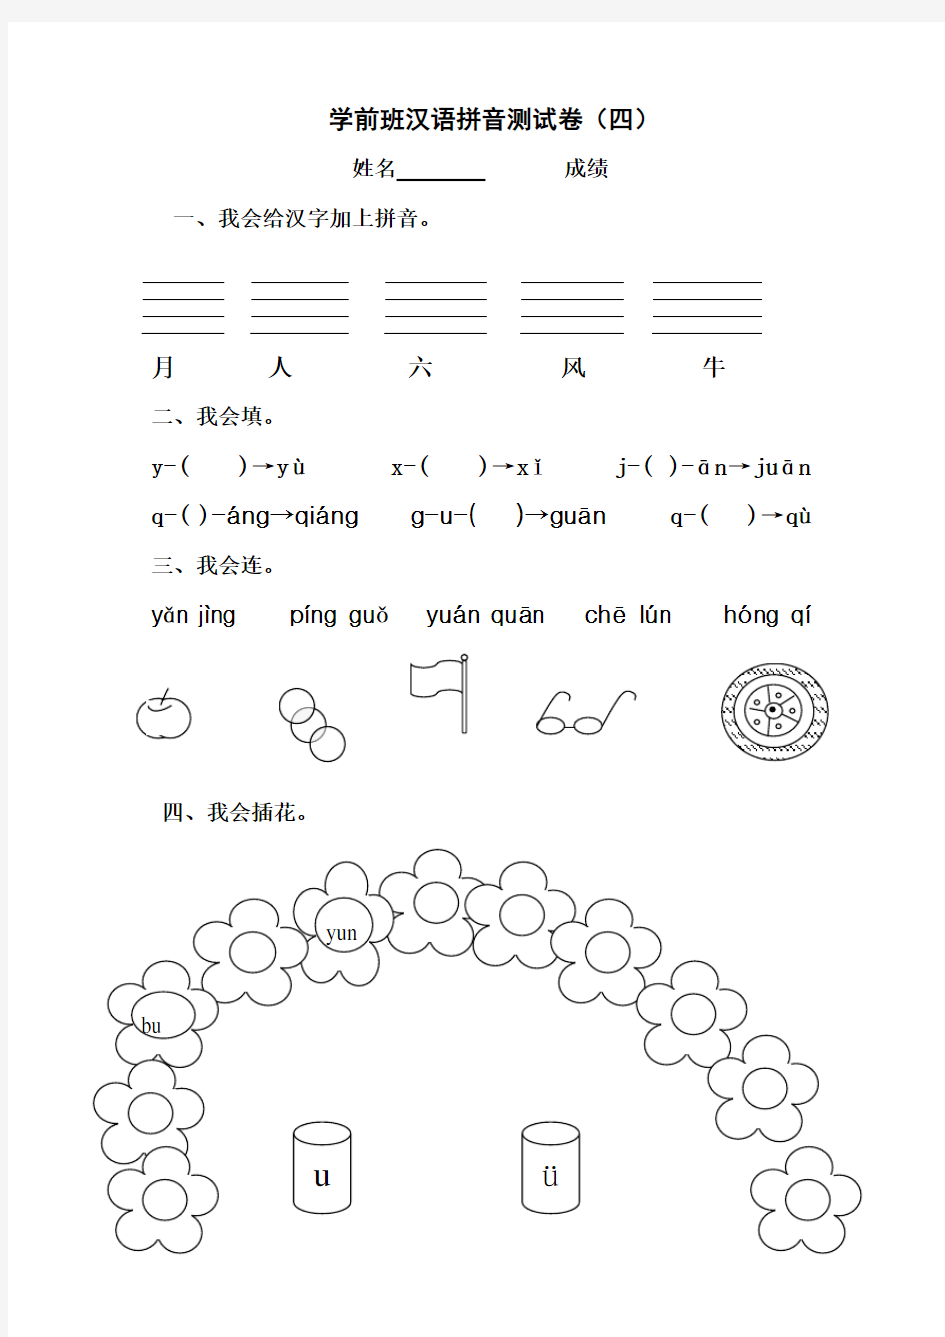 学前班汉语拼音测试卷